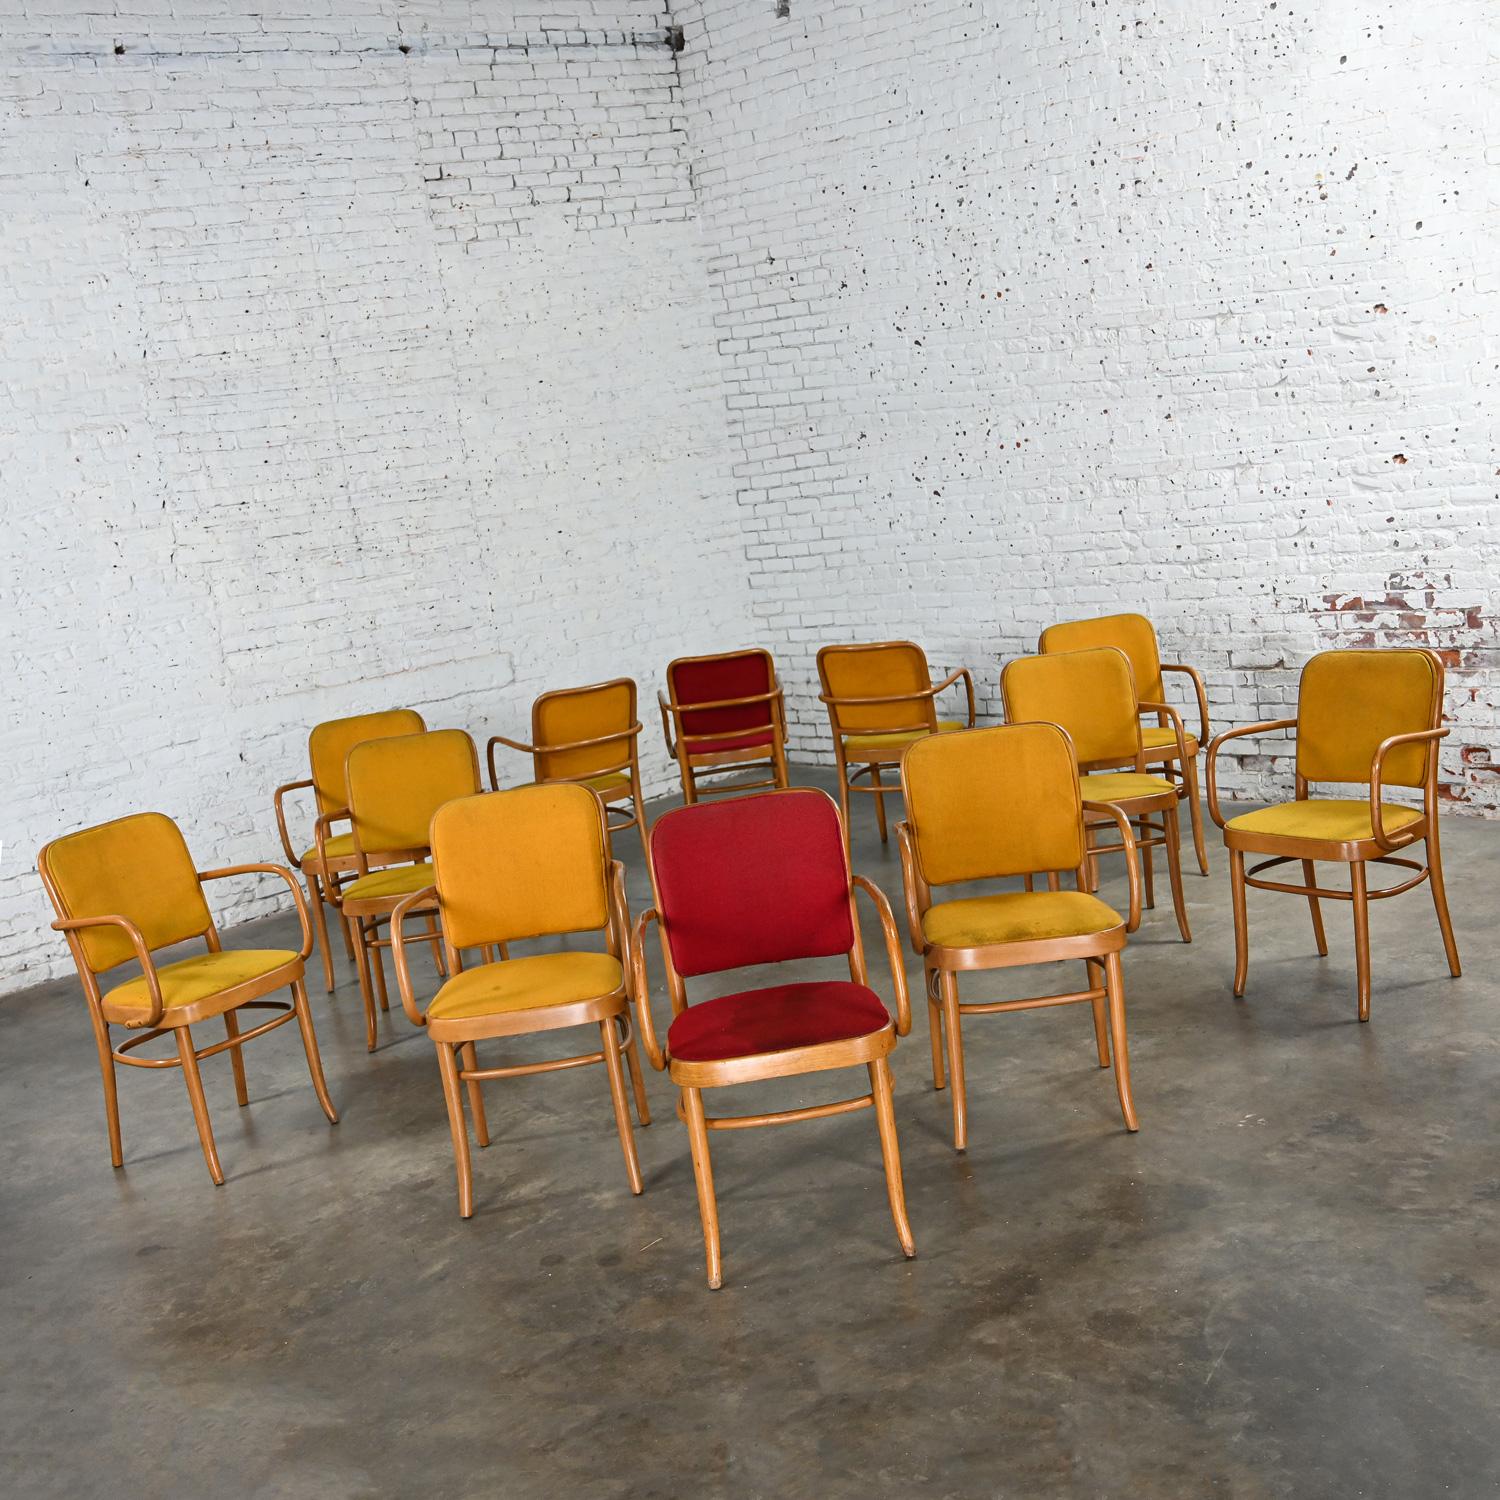 Merveilleuses chaises de salle à manger en hêtre courbé de style Thonet Josef Hoffman Prague 811 par Falcon Products Inc, ensemble de 12. Byit, en gardant à l'esprit qu'il s'agit d'une pièce vintage et non pas neuve, qui présentera donc des signes